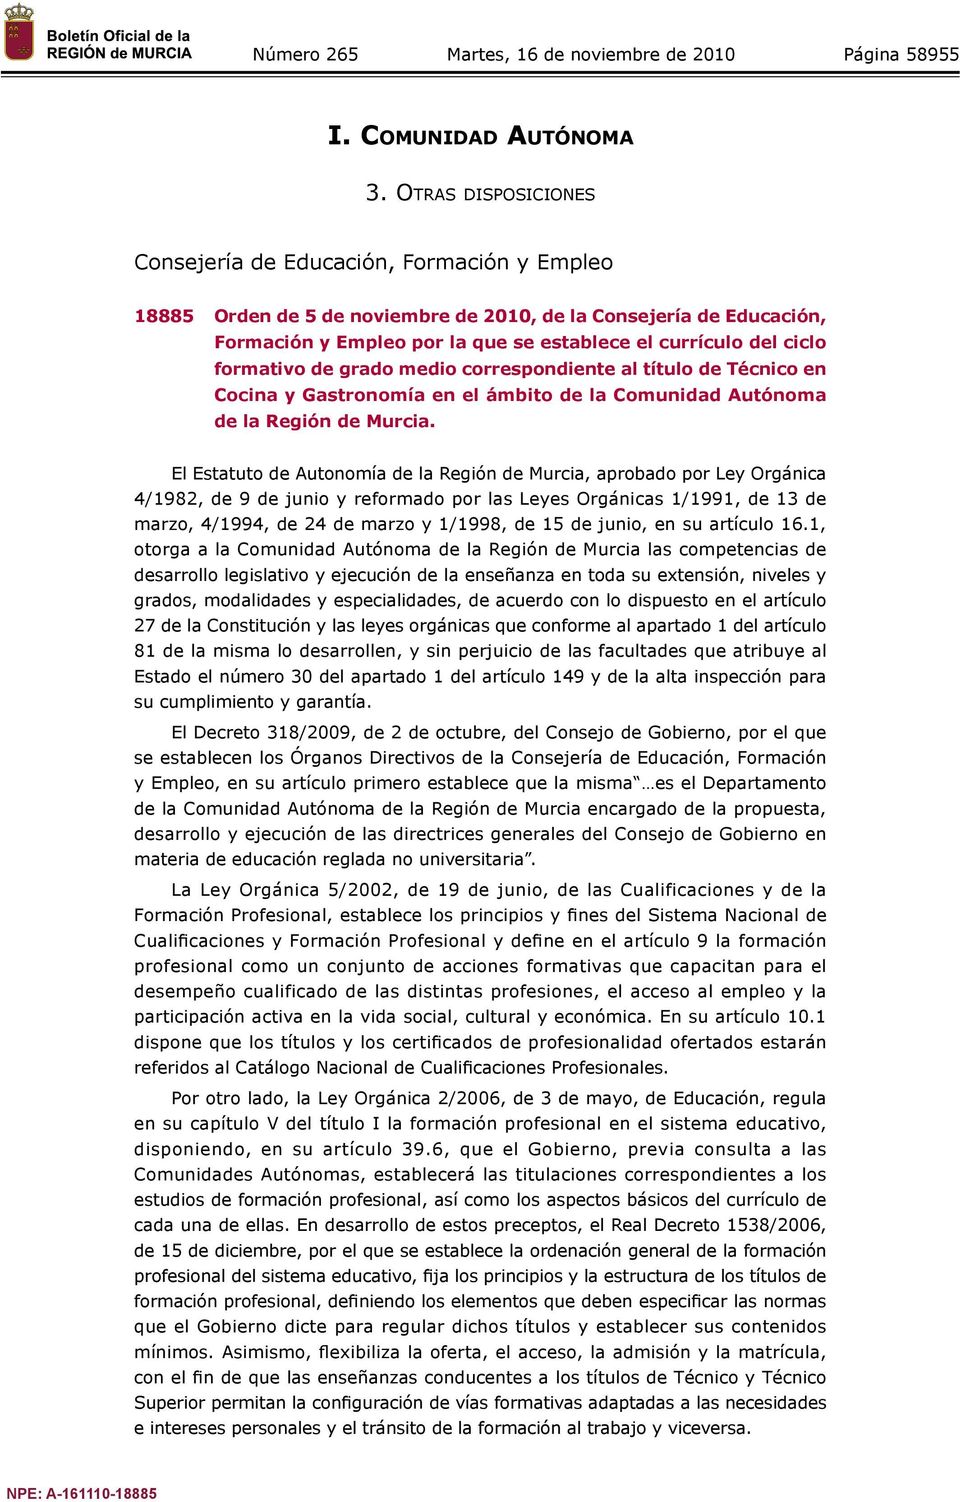 ciclo formativo de grado medio correspondiente al título de Técnico en Cocina y Gastronomía en el ámbito de la Comunidad Autónoma de la Región de Murcia.